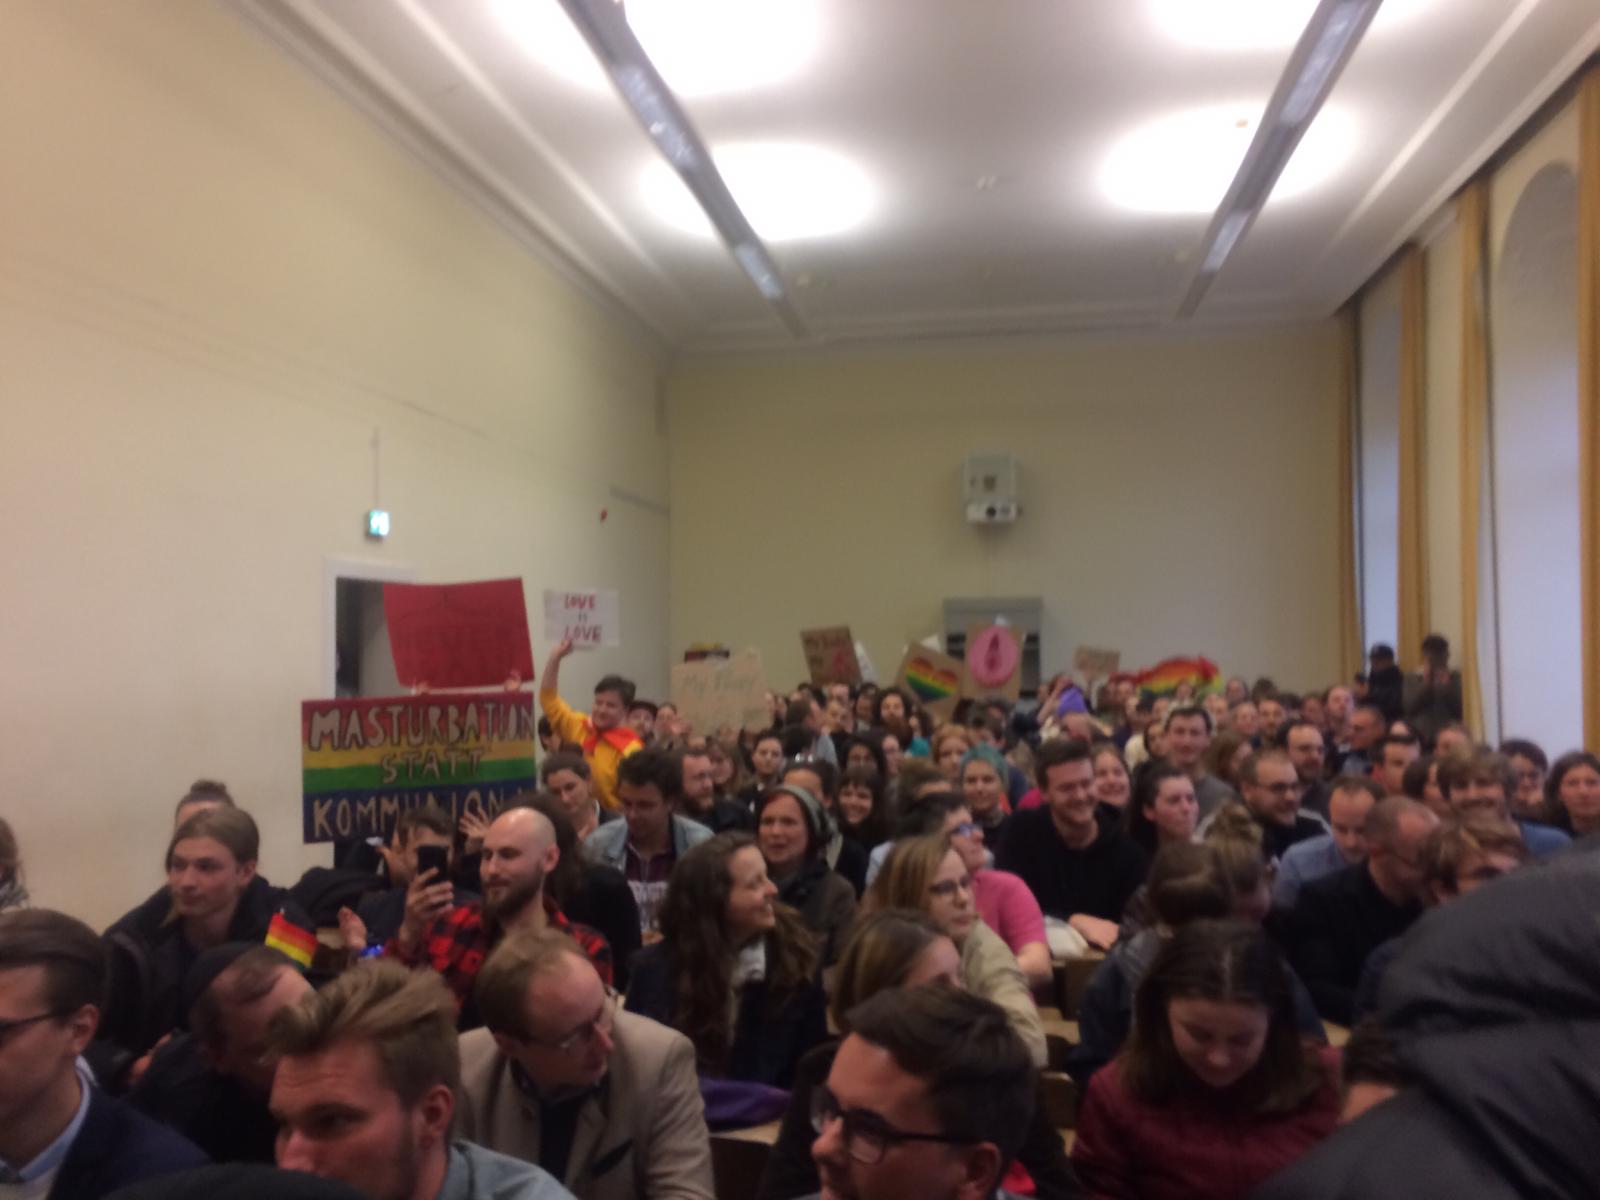 DemoFürAlle-Vortrag an Uni Bonn von linkem Mob torpediert: Gefährliche Steinwurf-Attacke auf Vortragsteilnehmer